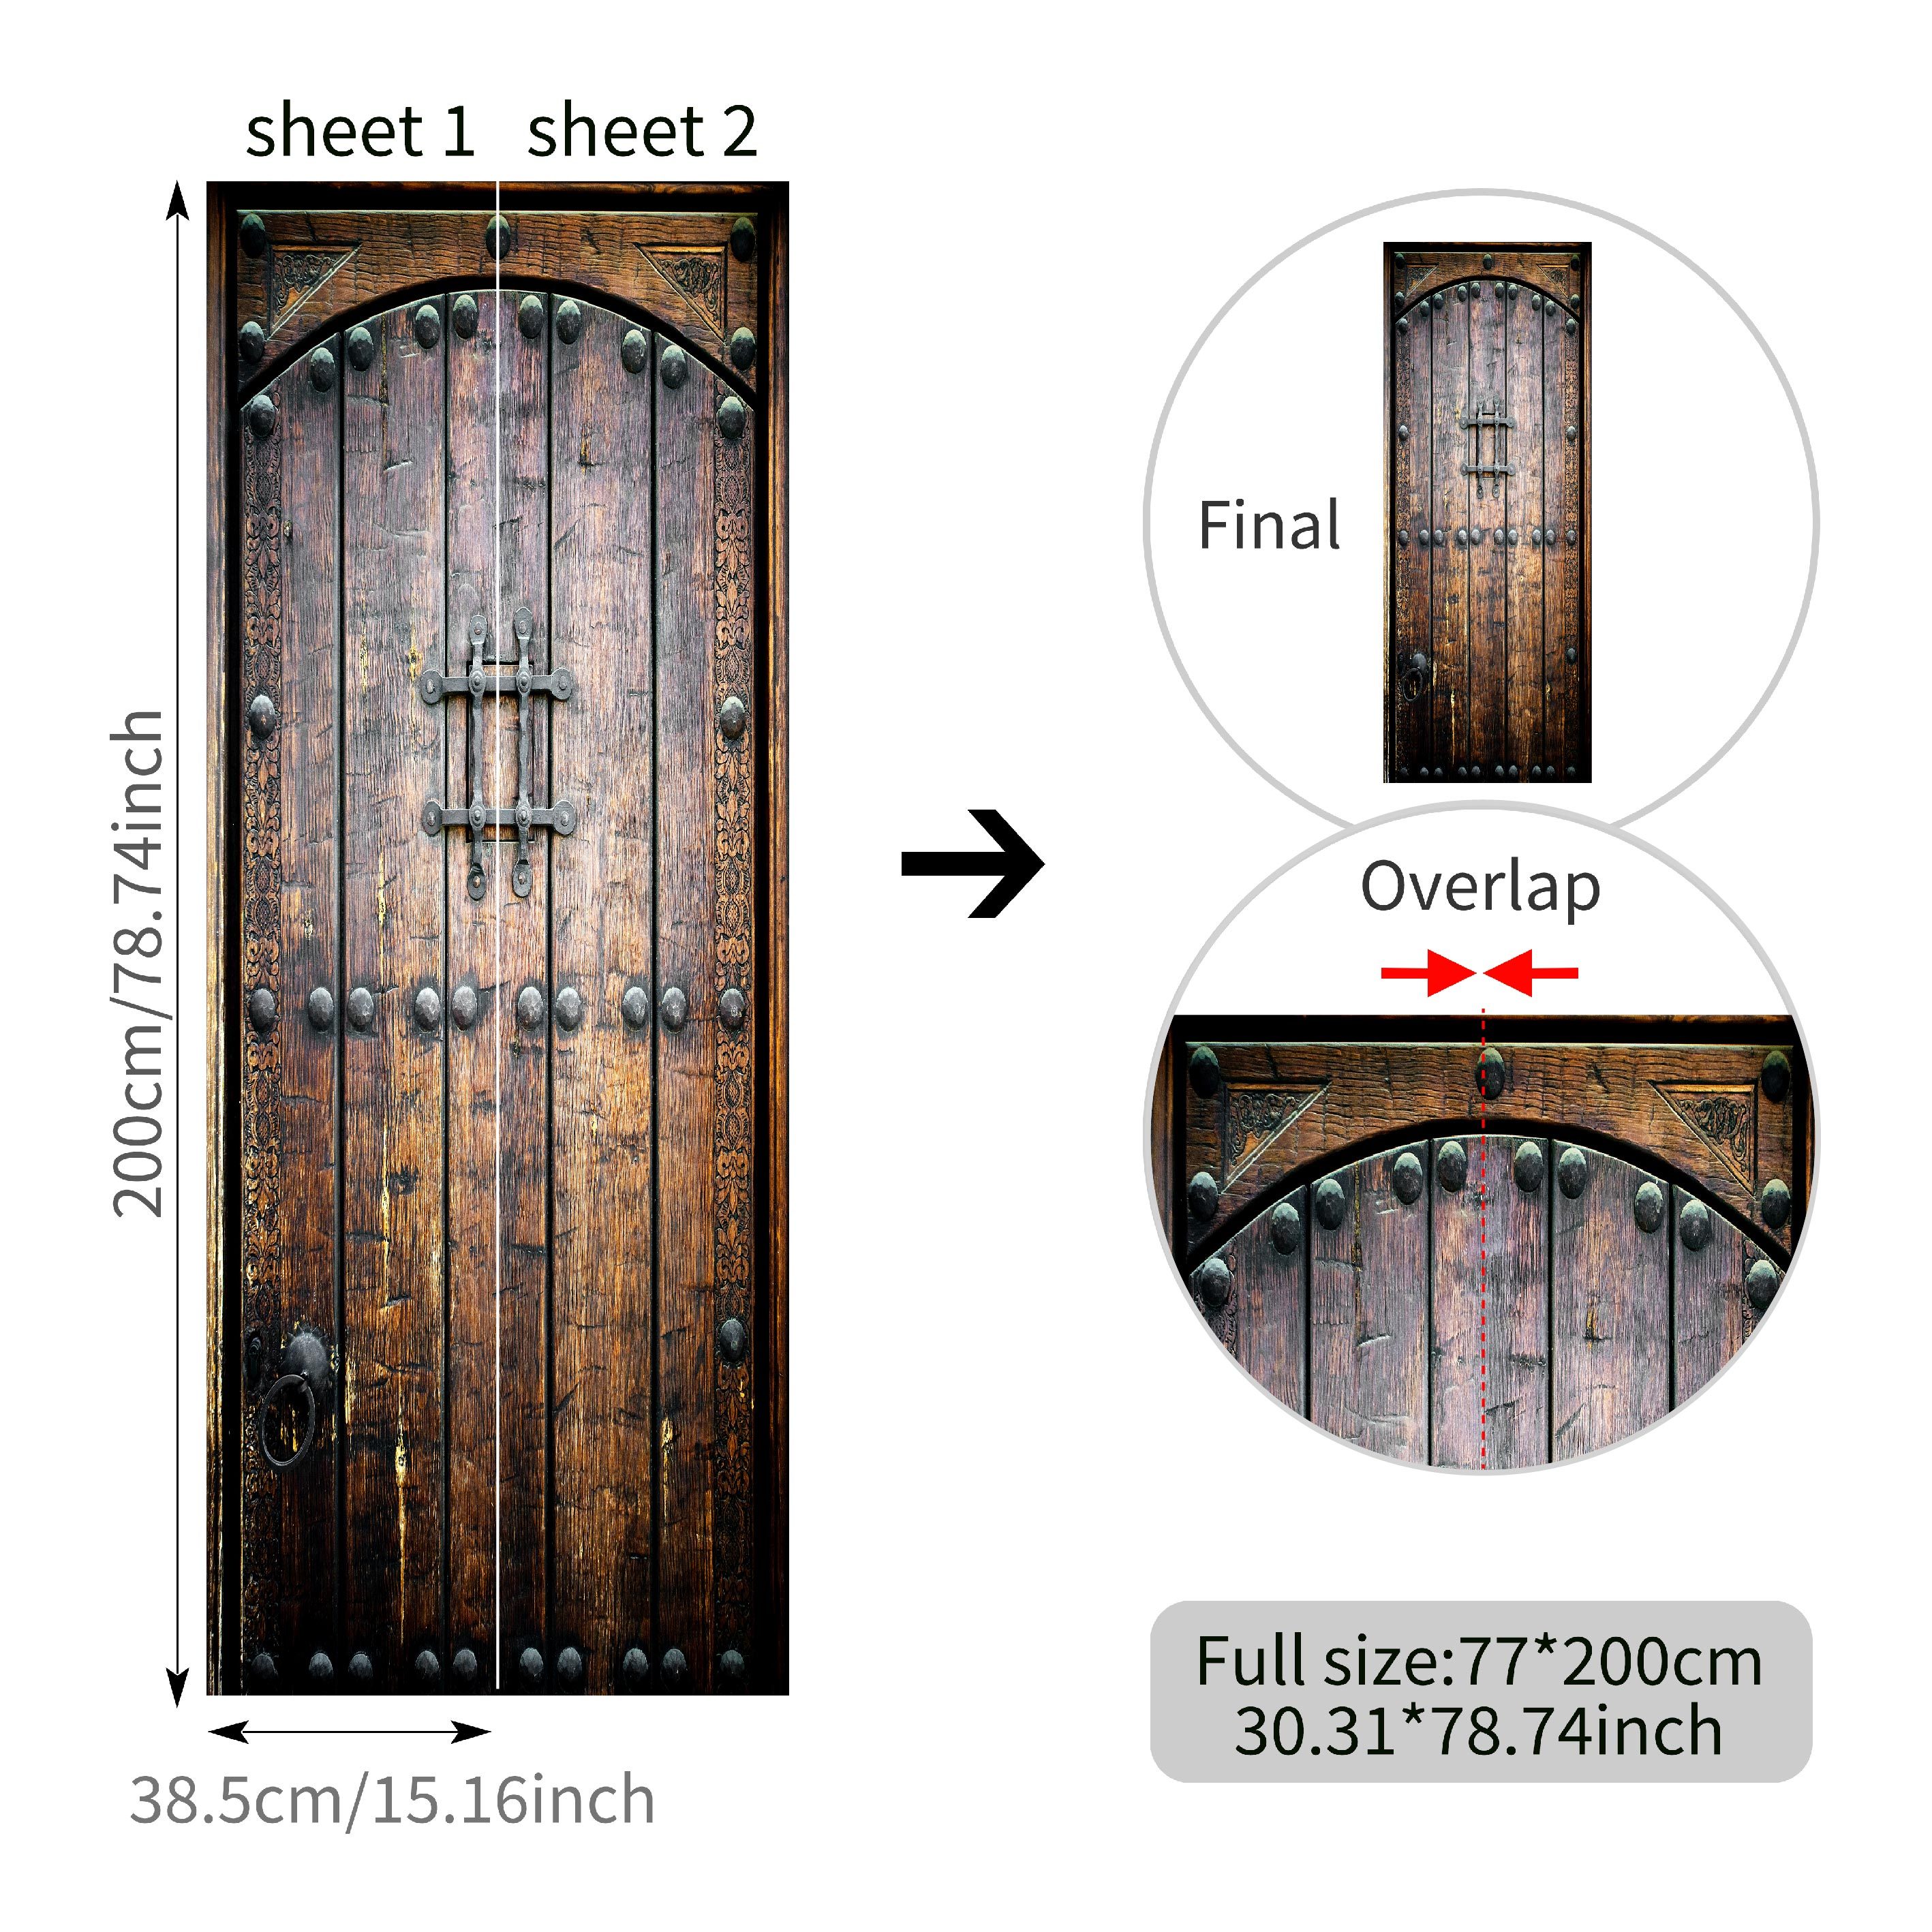 vinilo puerta madera 77x200cm(30.31 inches * 78.74 inches)Puerta de madera  remachado xtraíble Impermeable DIY Adhesivo Decorativo de Puerta  Autoadhesivo de Bricolaje Pegatinas de Pared Decoración de H : :  Bricolaje y herramientas